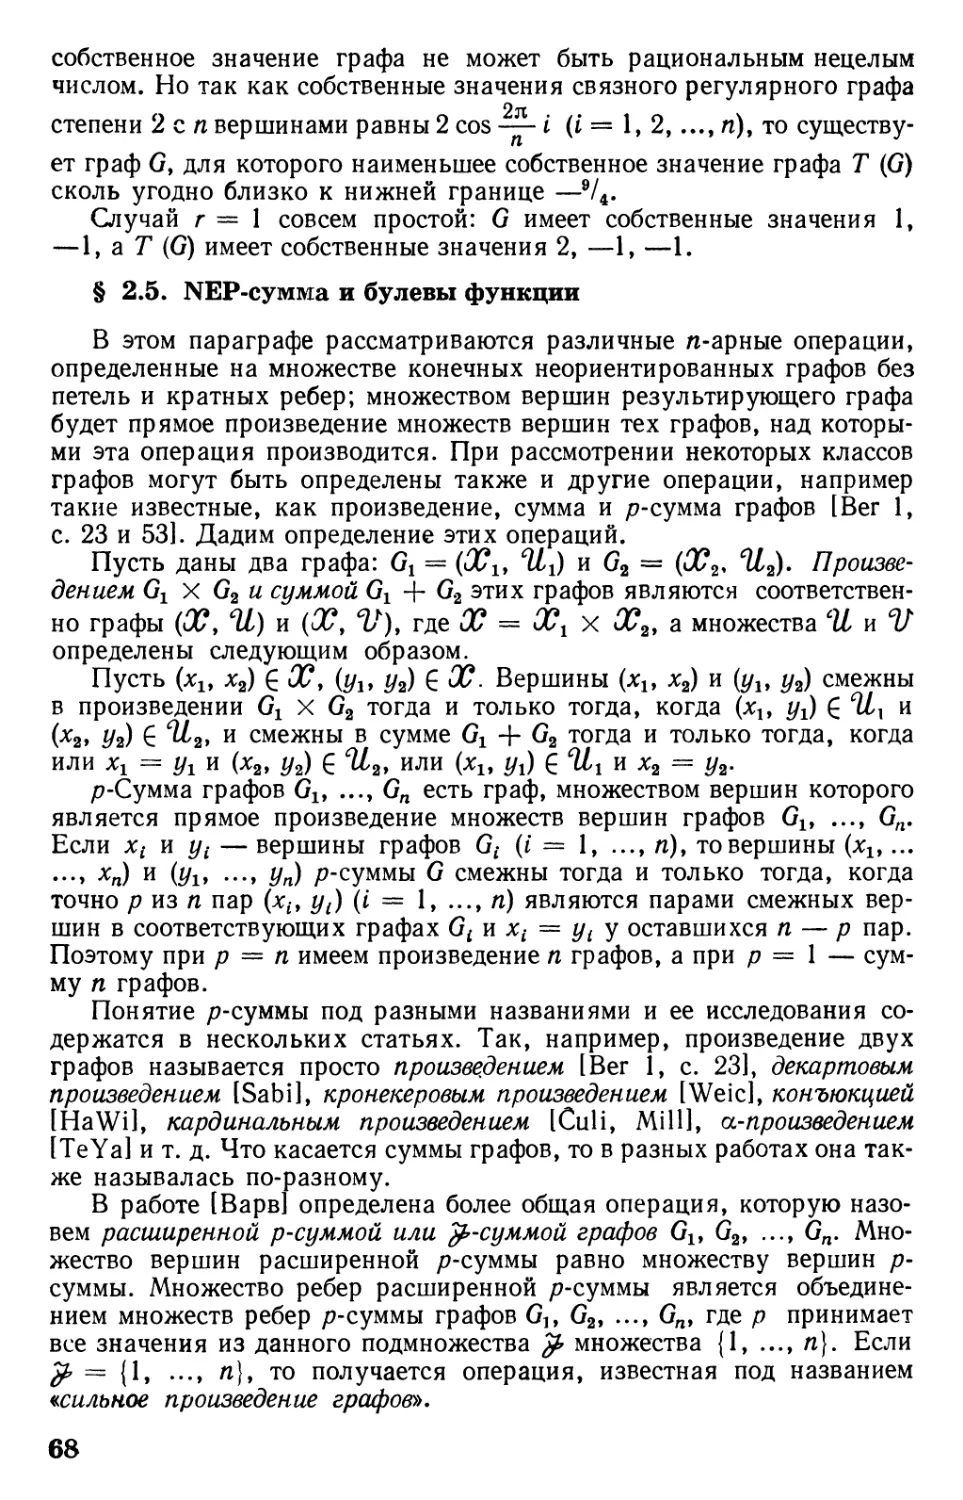 § 2.5. NEP-сумма и булевы функции